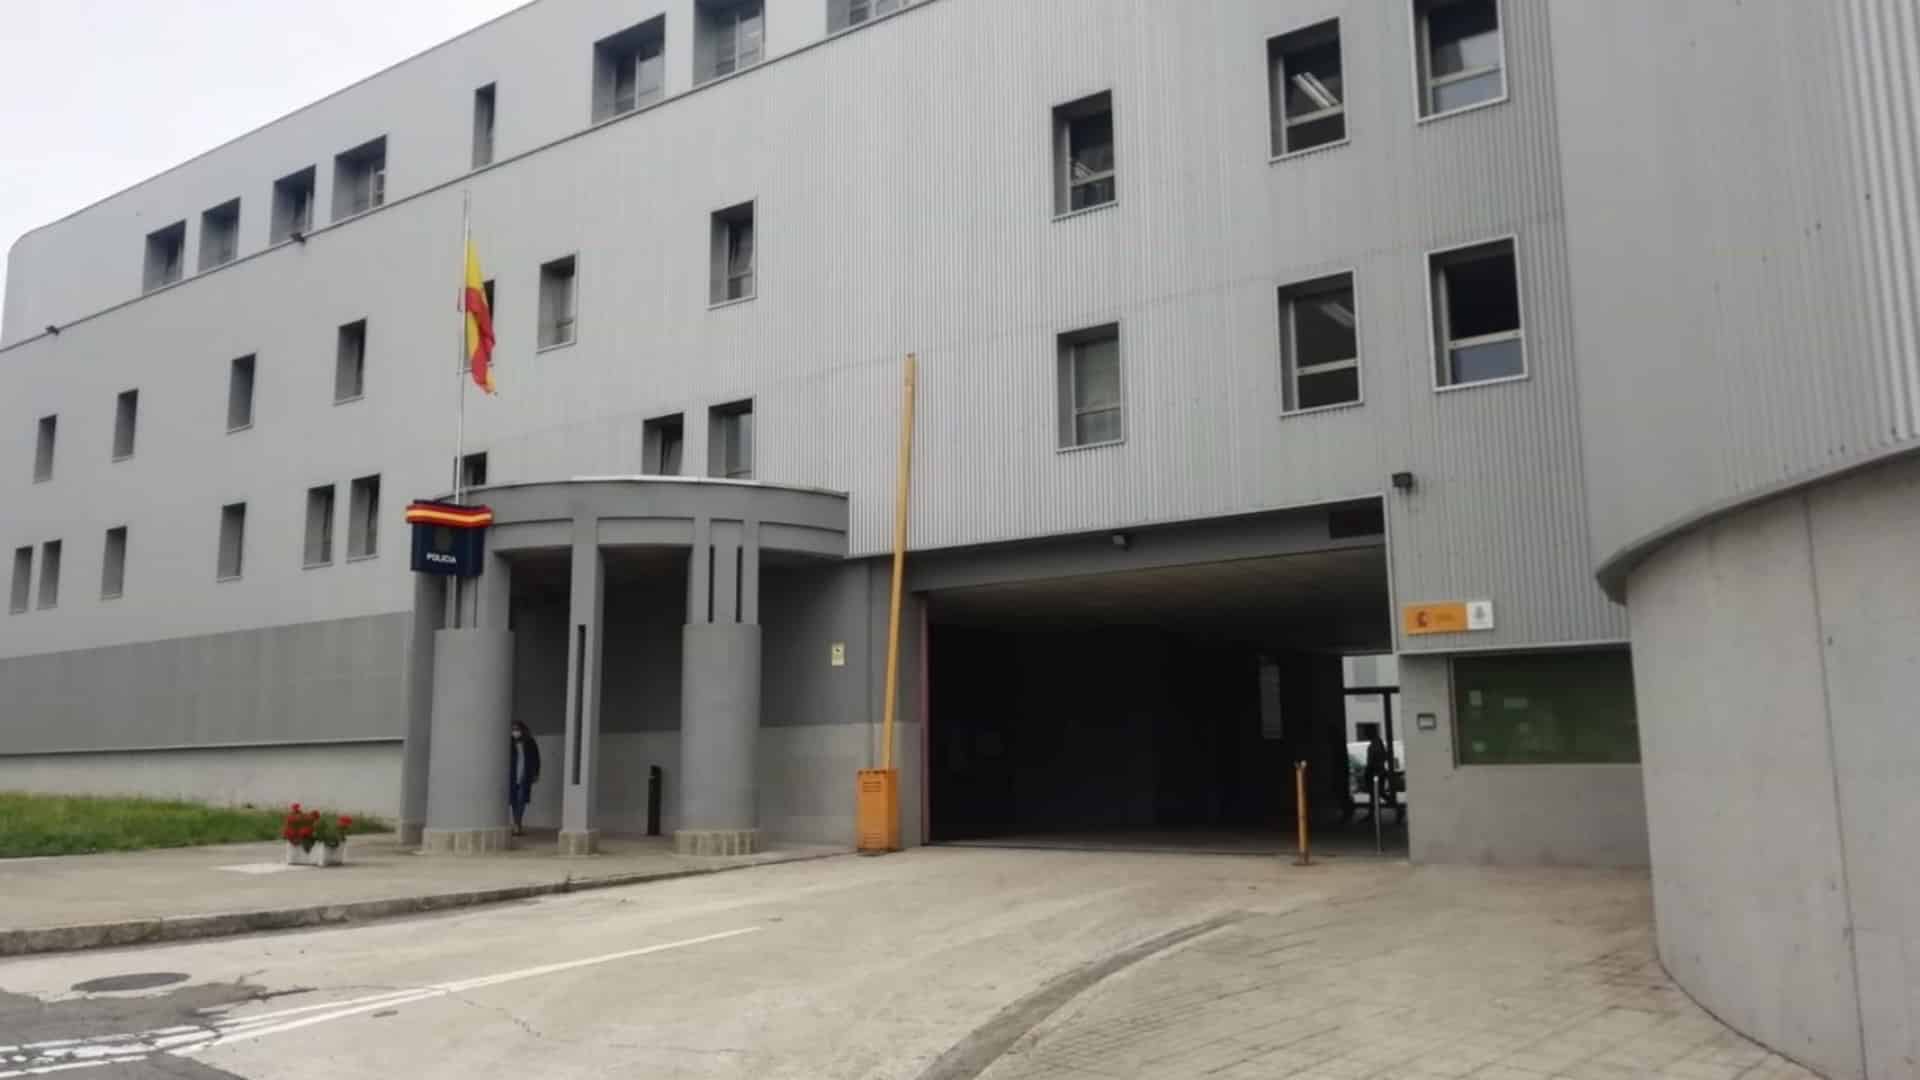 La comisaría de Lonzas, en A Coruña | EP